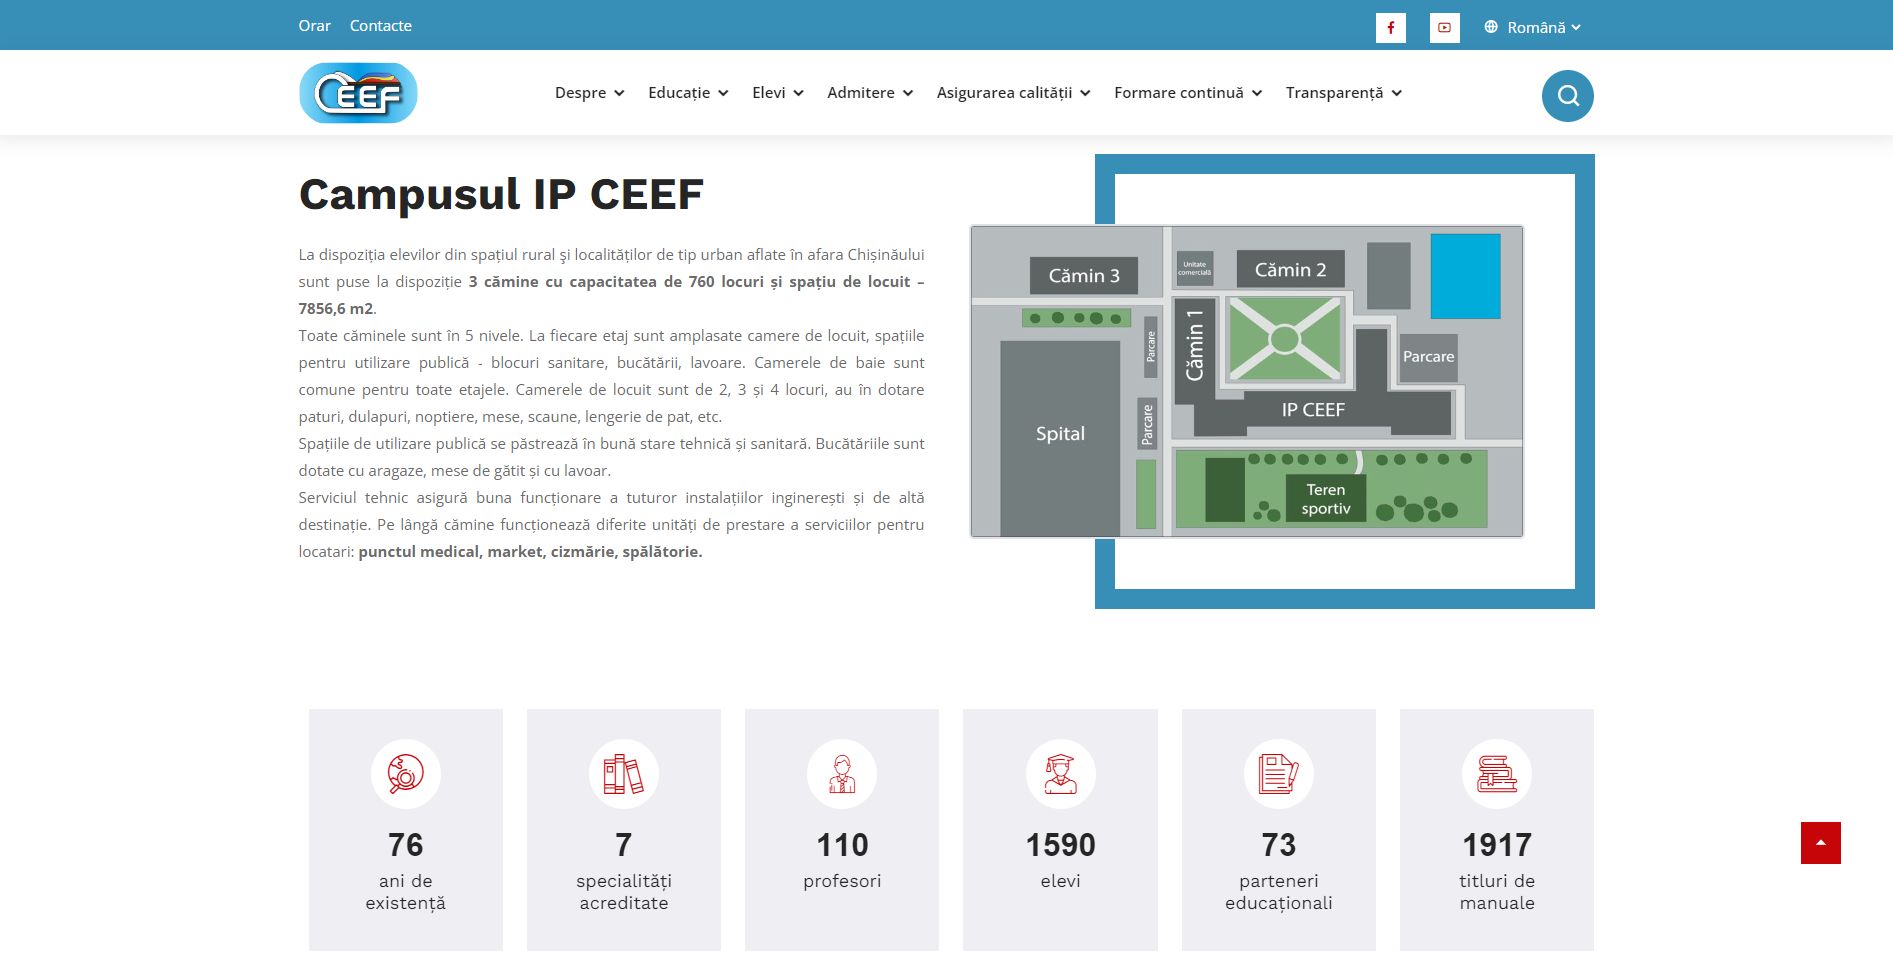 IP CEEF website